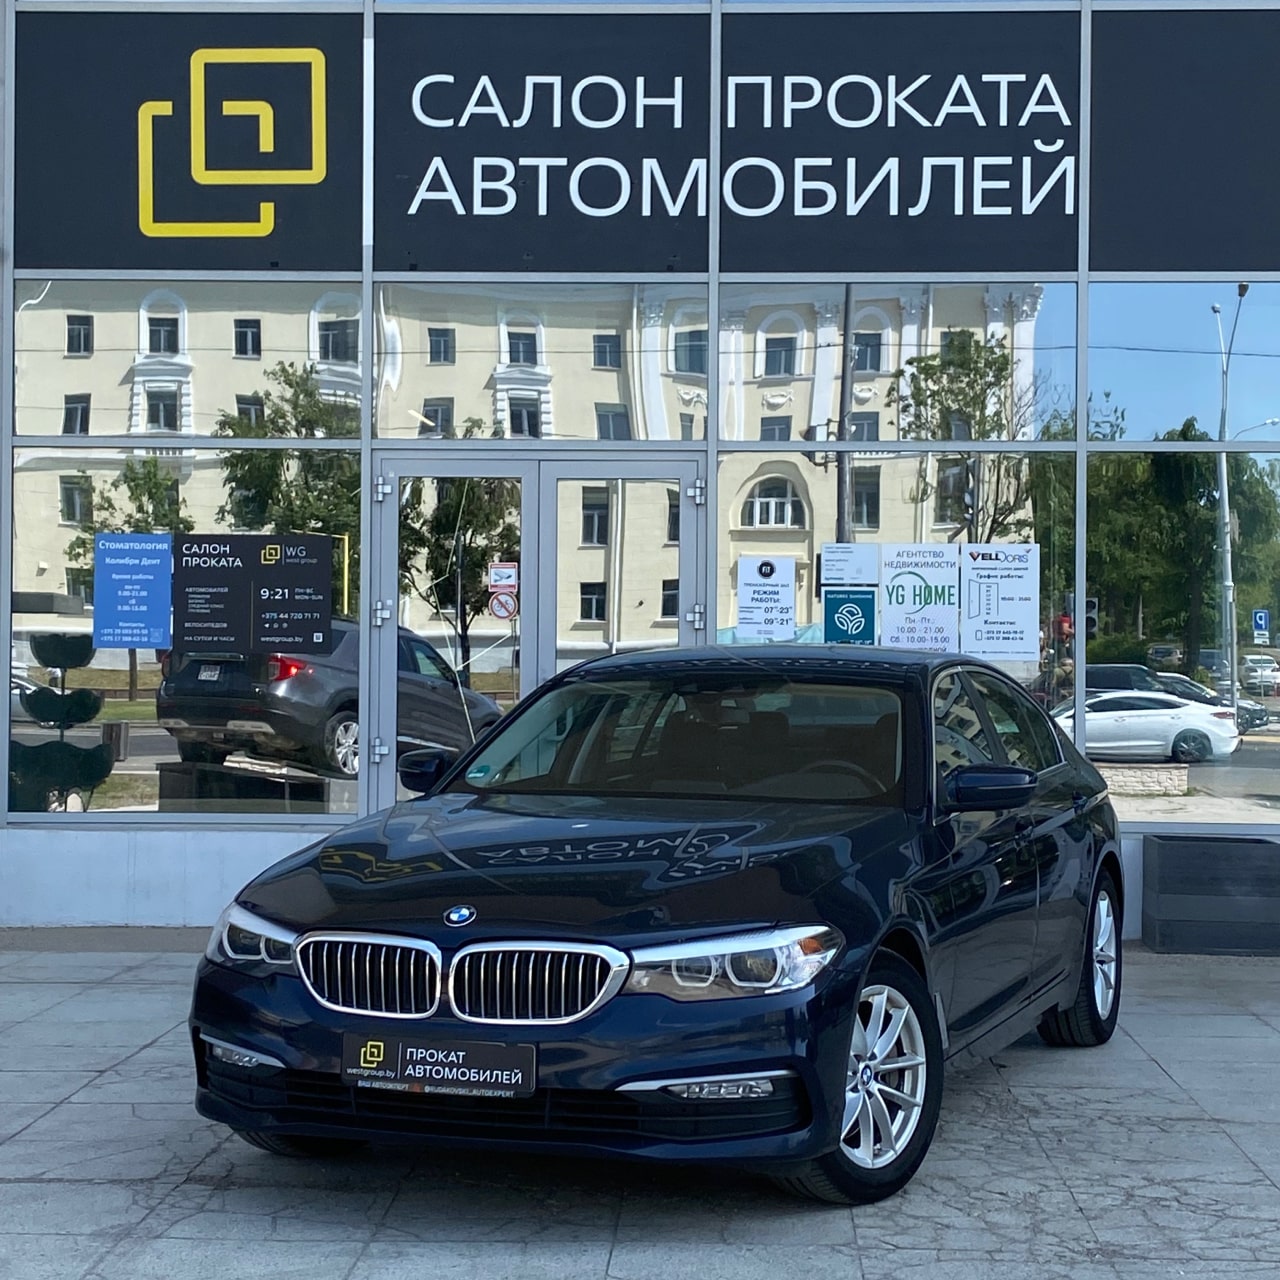 Аренда  BMW 520d G30 Luxury Line  3 класса 2019 года в городе Минск от 99 $/сутки,  двигатель: ДТ , объем 2.0 литров, КАСКО (Мультидрайв), без водителя, вид 8 - West Group